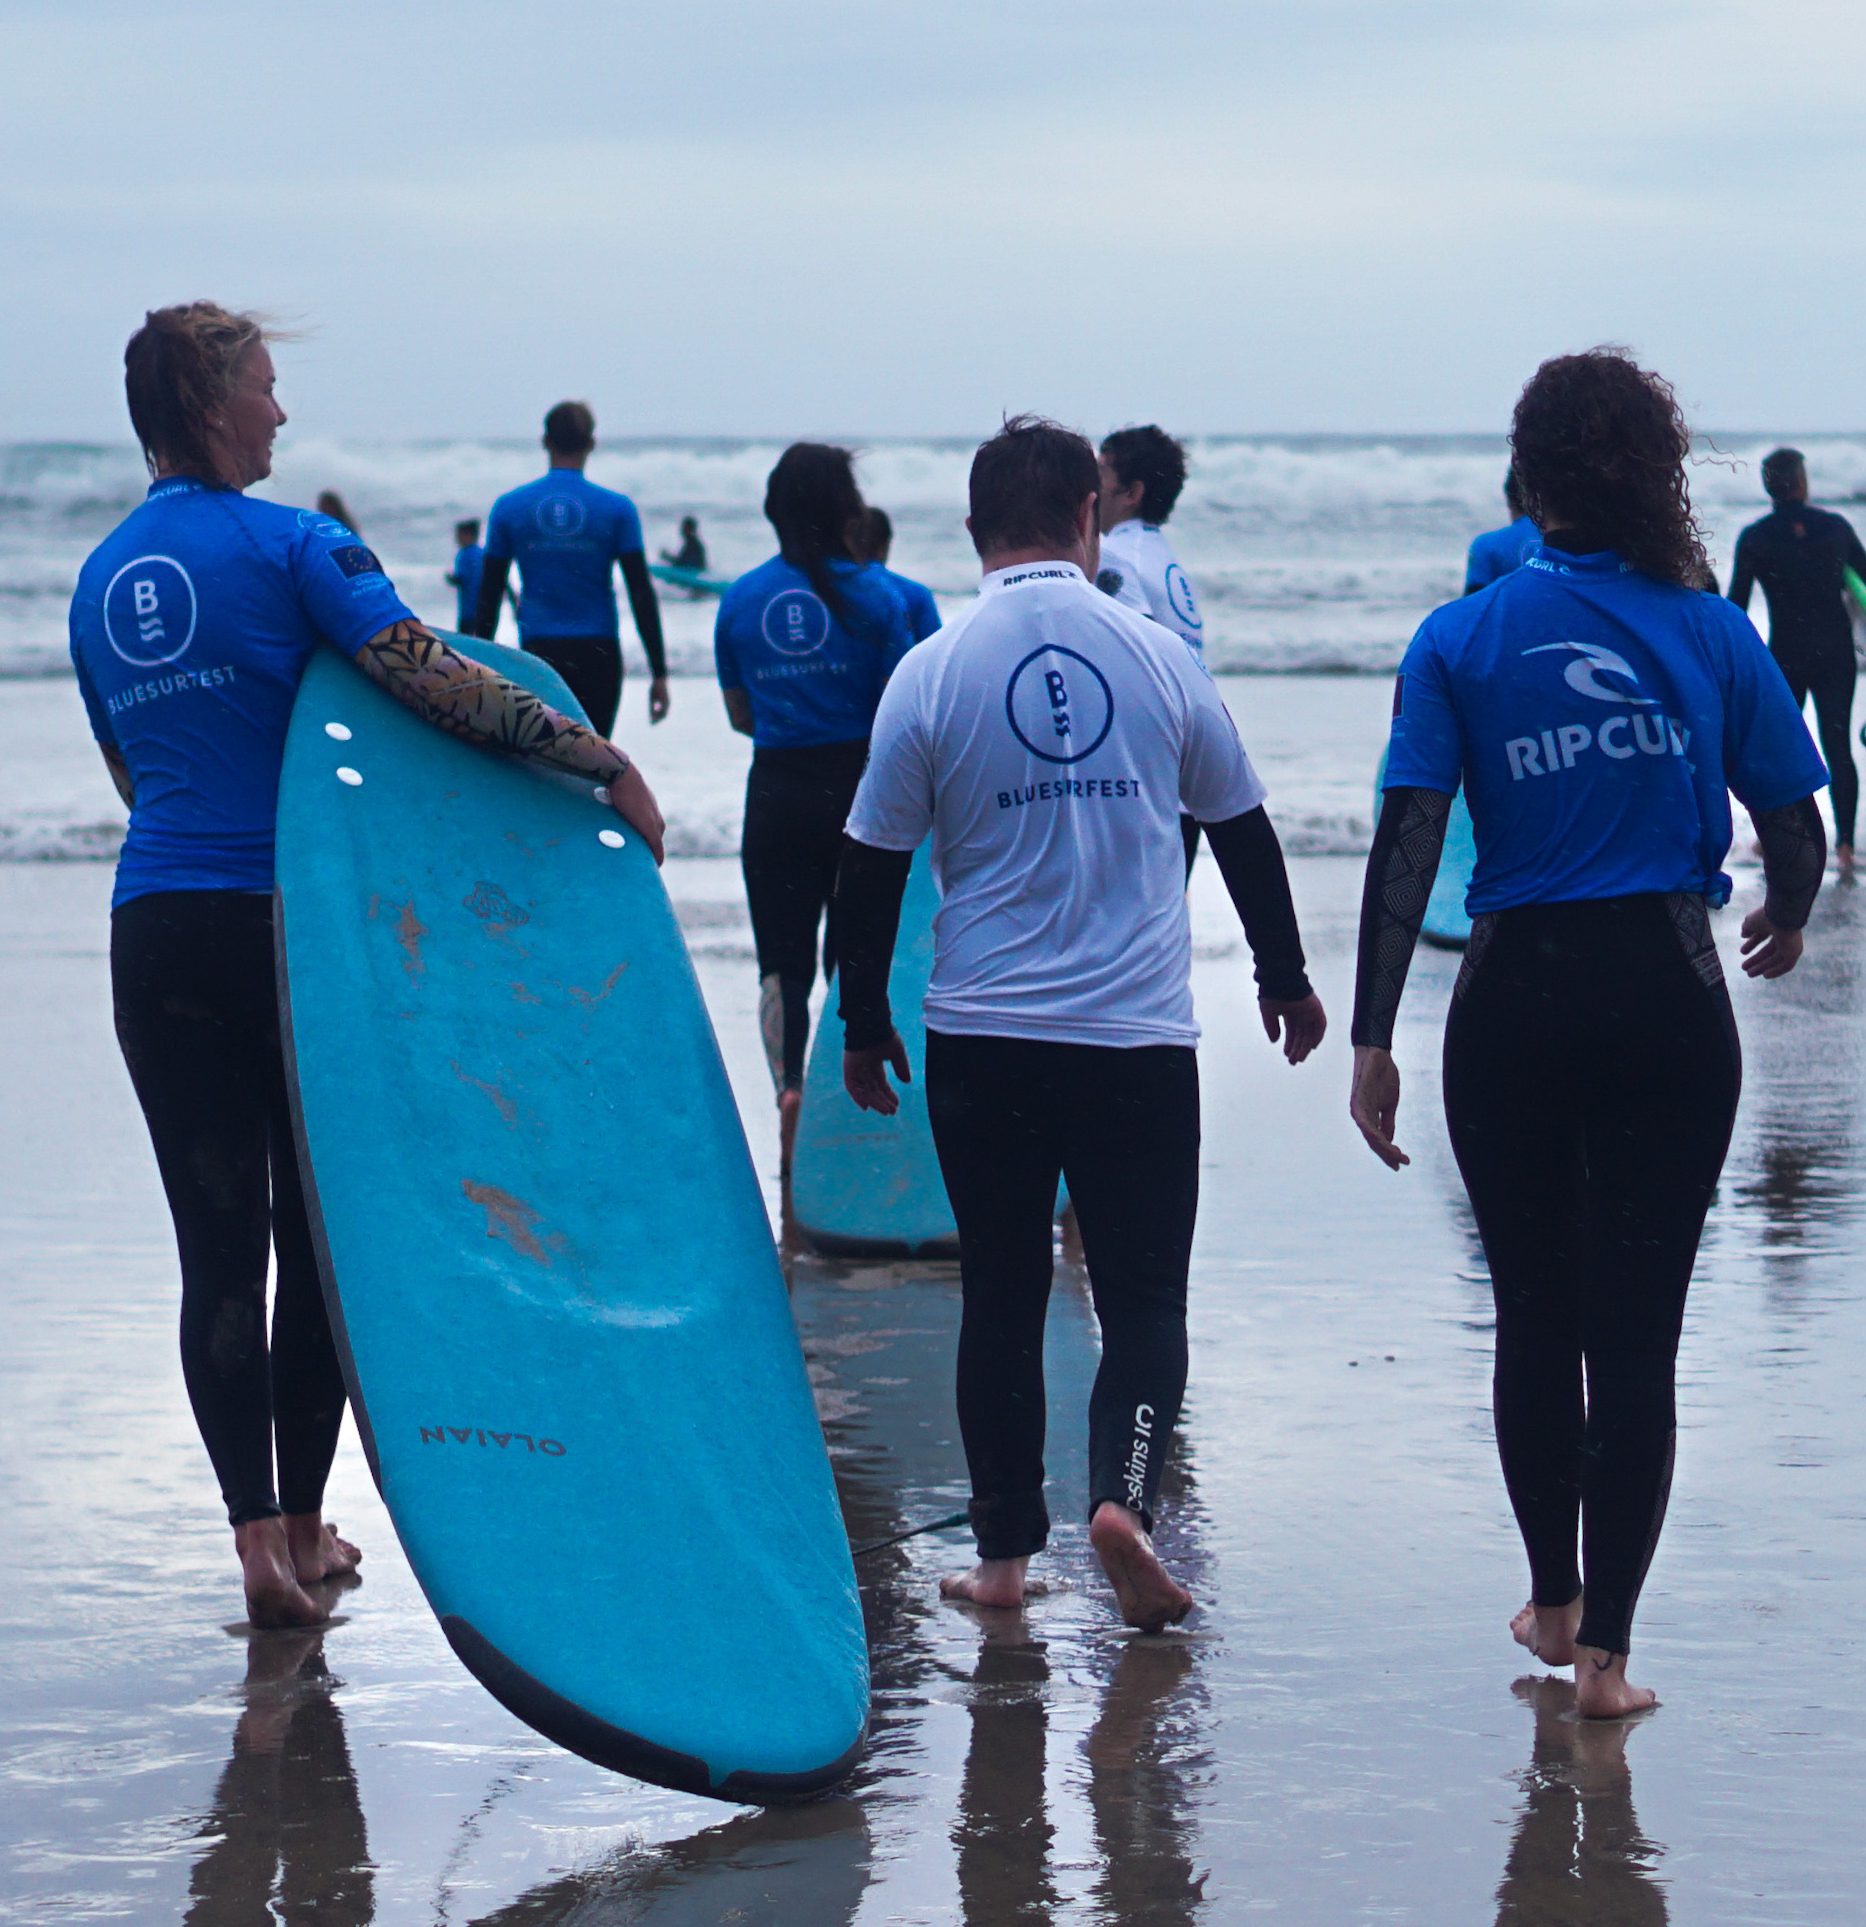 « Le BLUESURFEST France, retour sur un festival destiné à promouvoir l’inclusion par le sport et le surf »